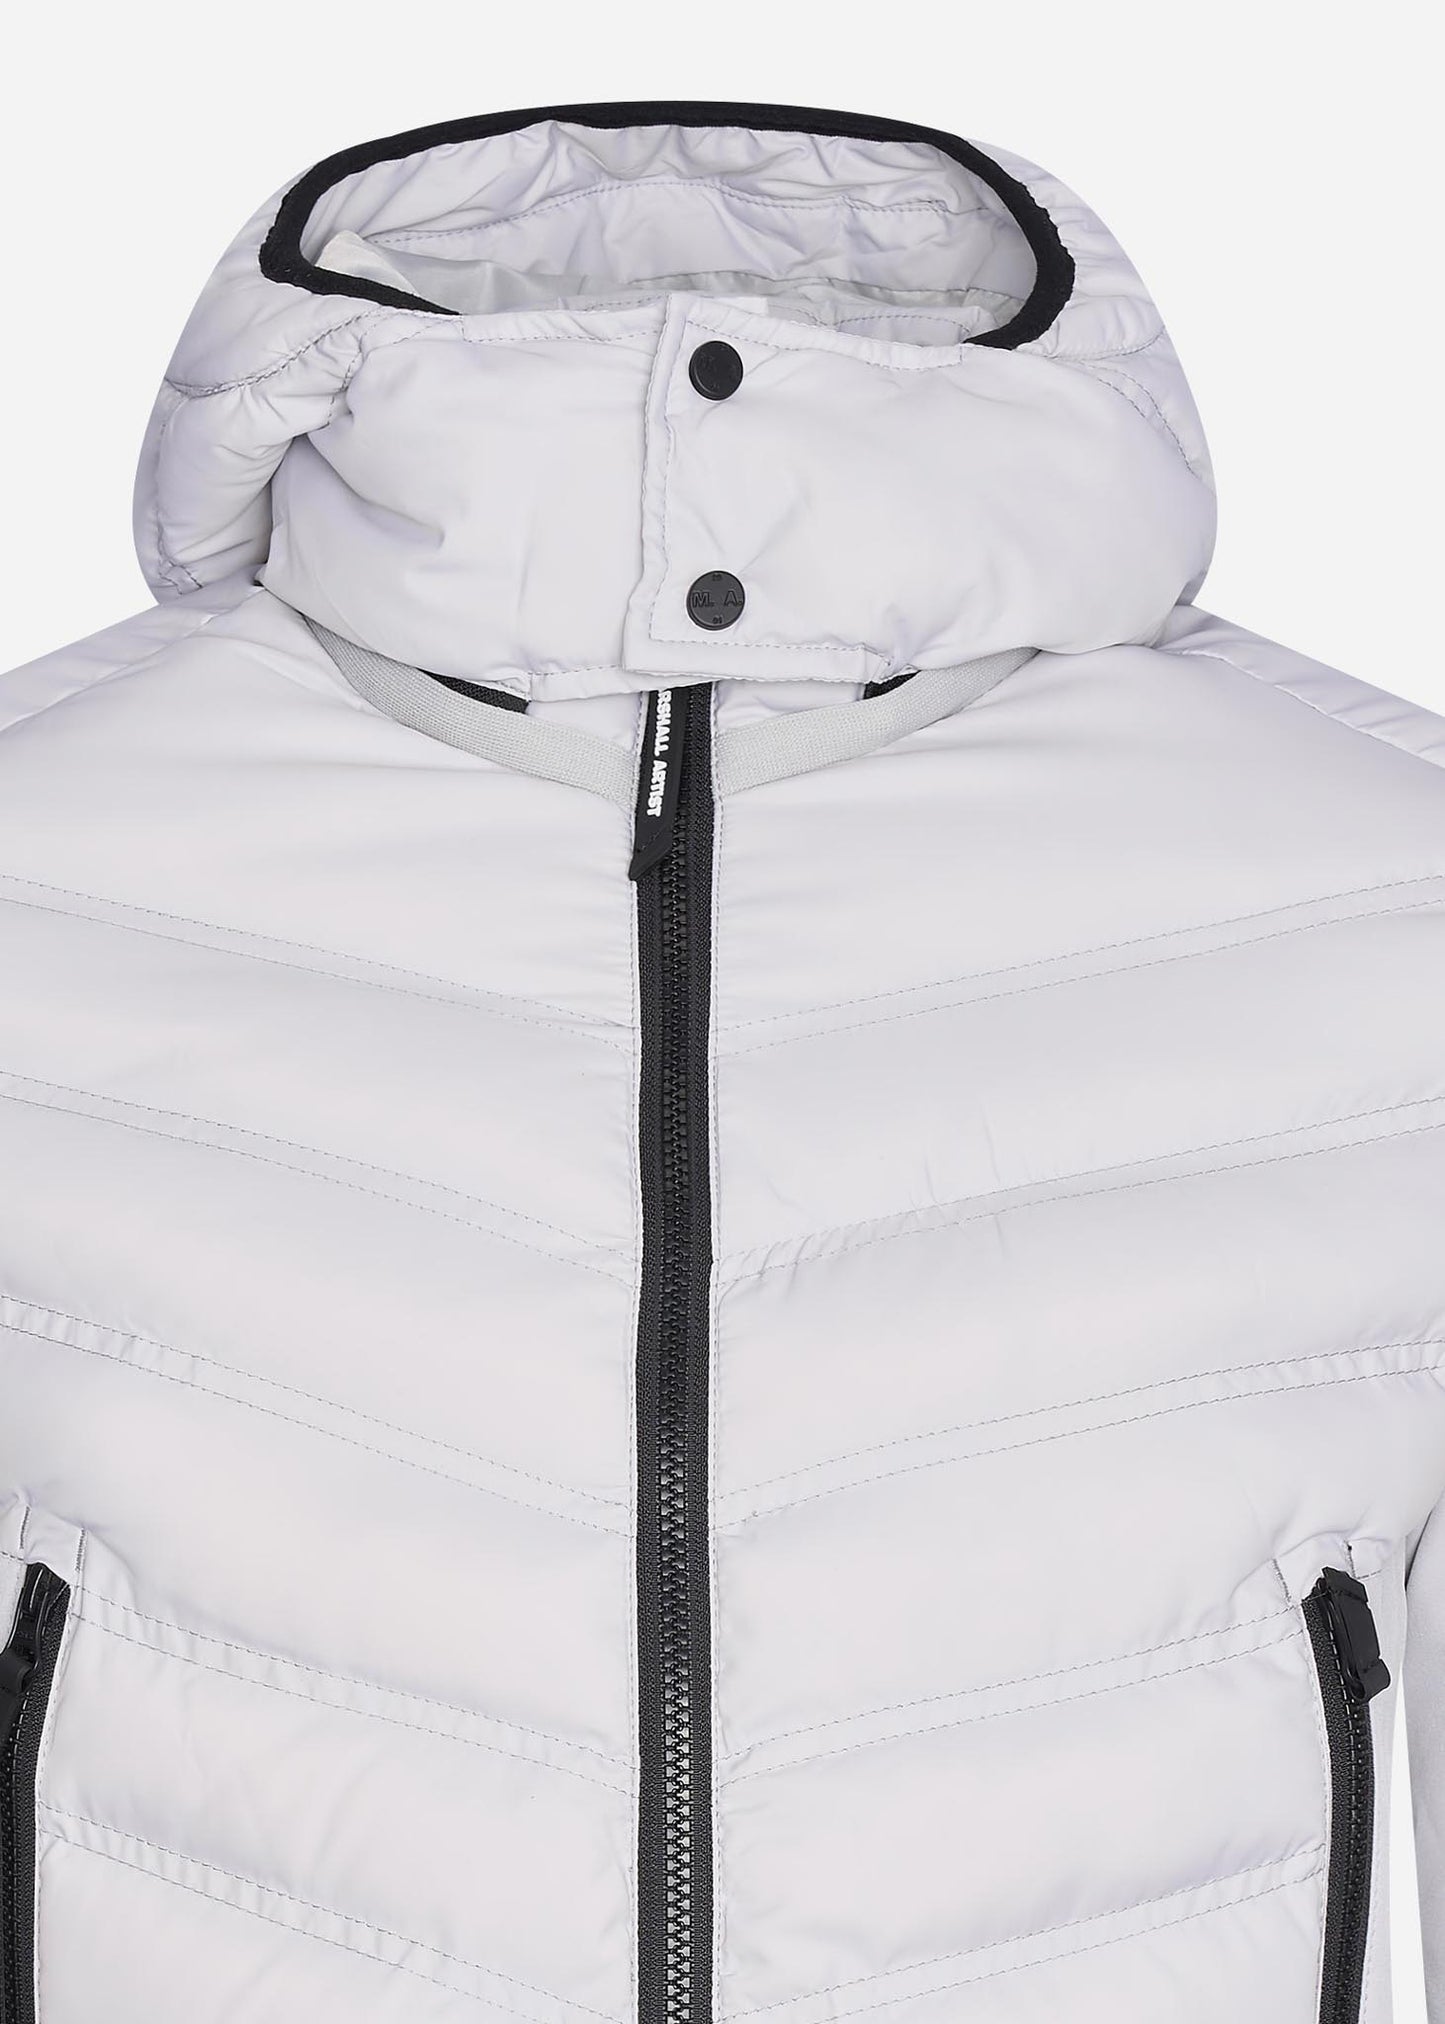 Marshall Artist jacket antarticta grey